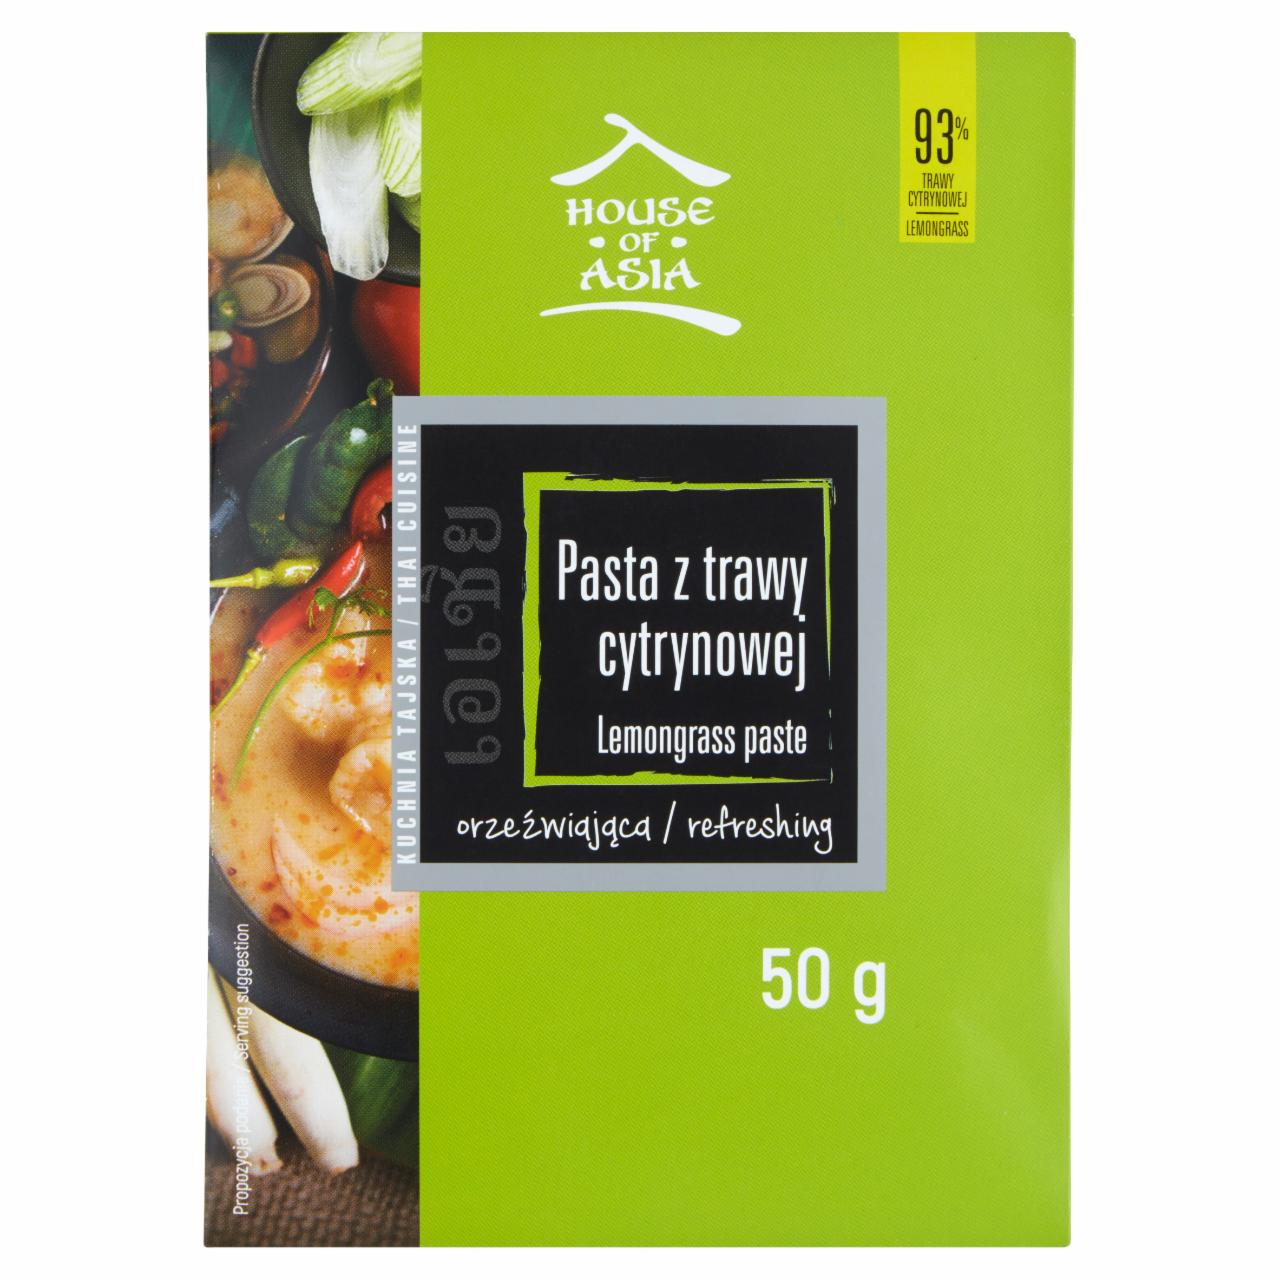 Zdjęcia - House of Asia Pasta z trawy cytrynowej 50 g